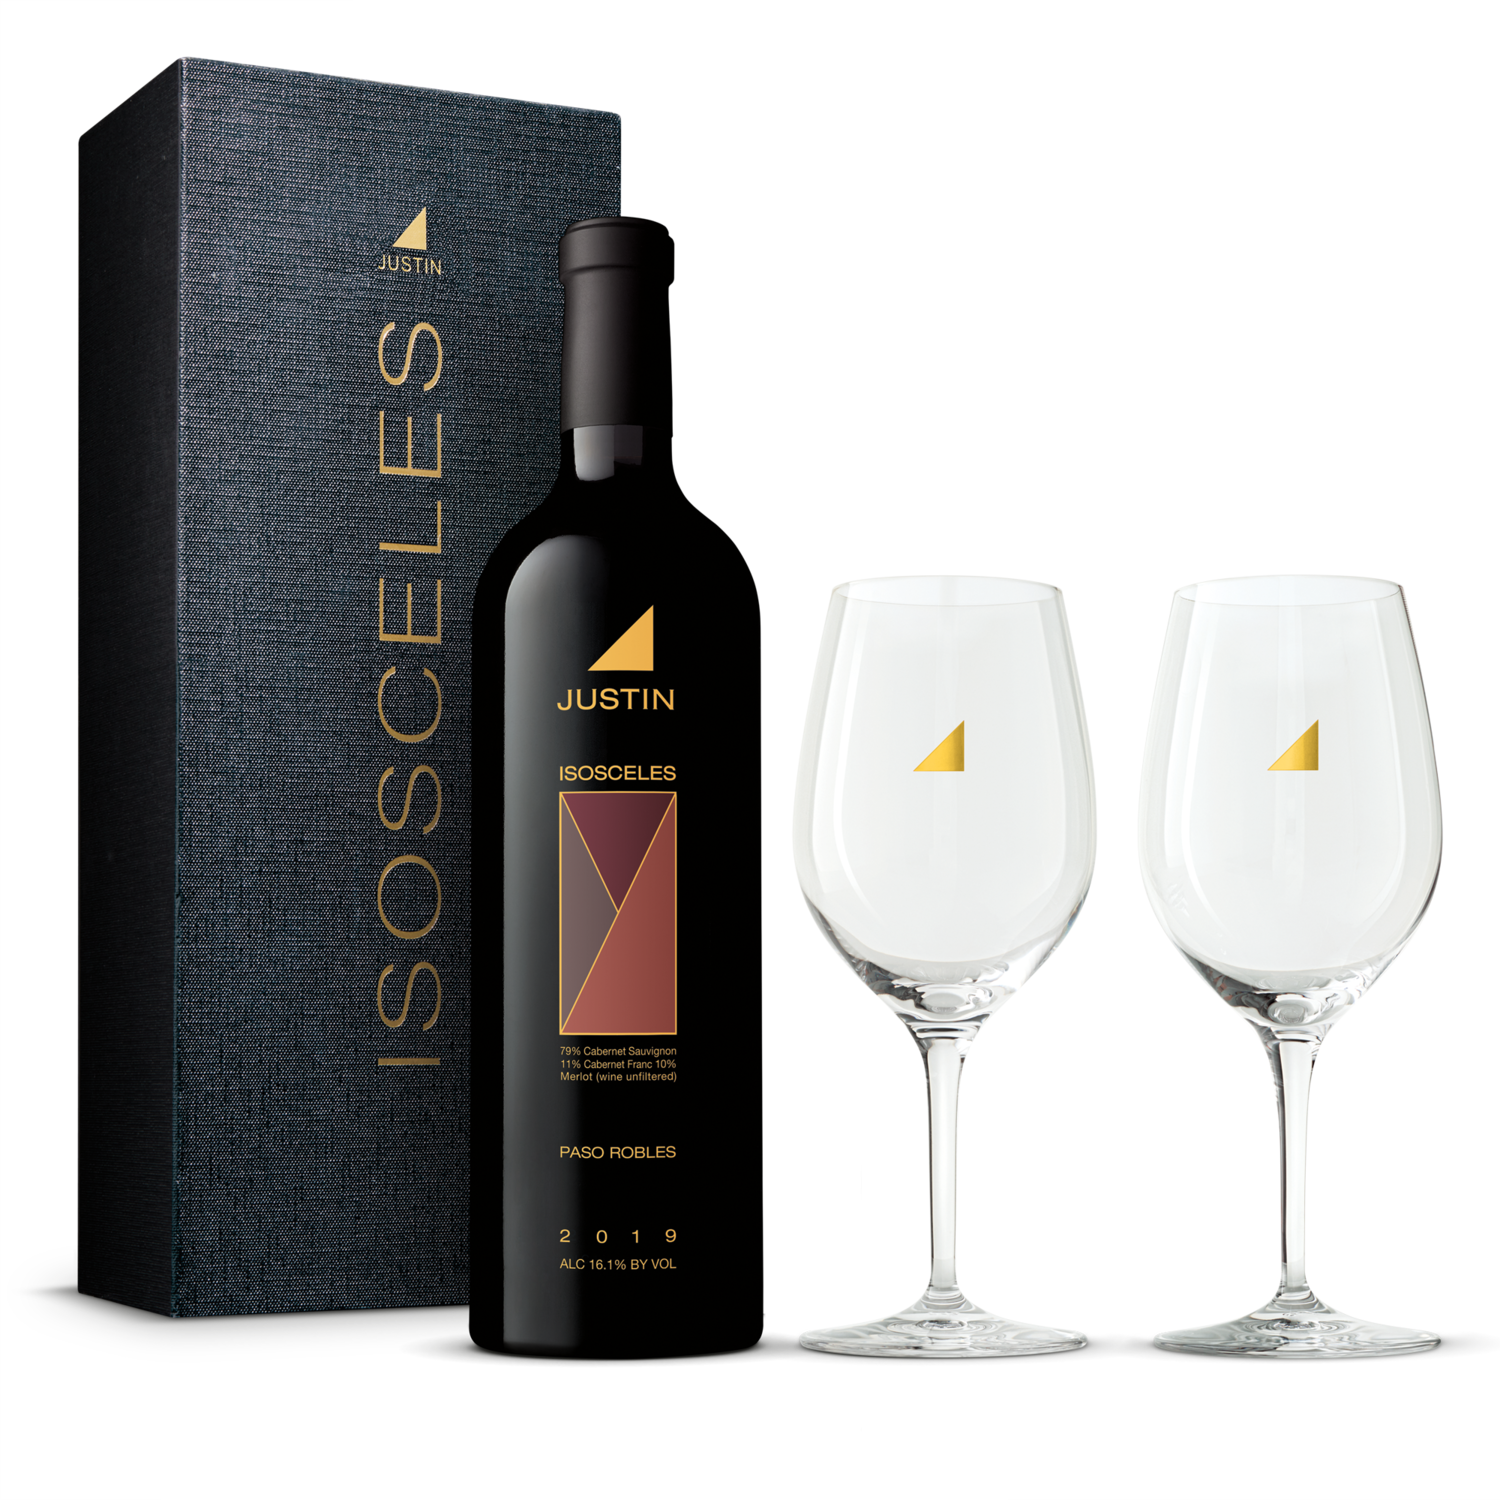 isosceles wine 2016